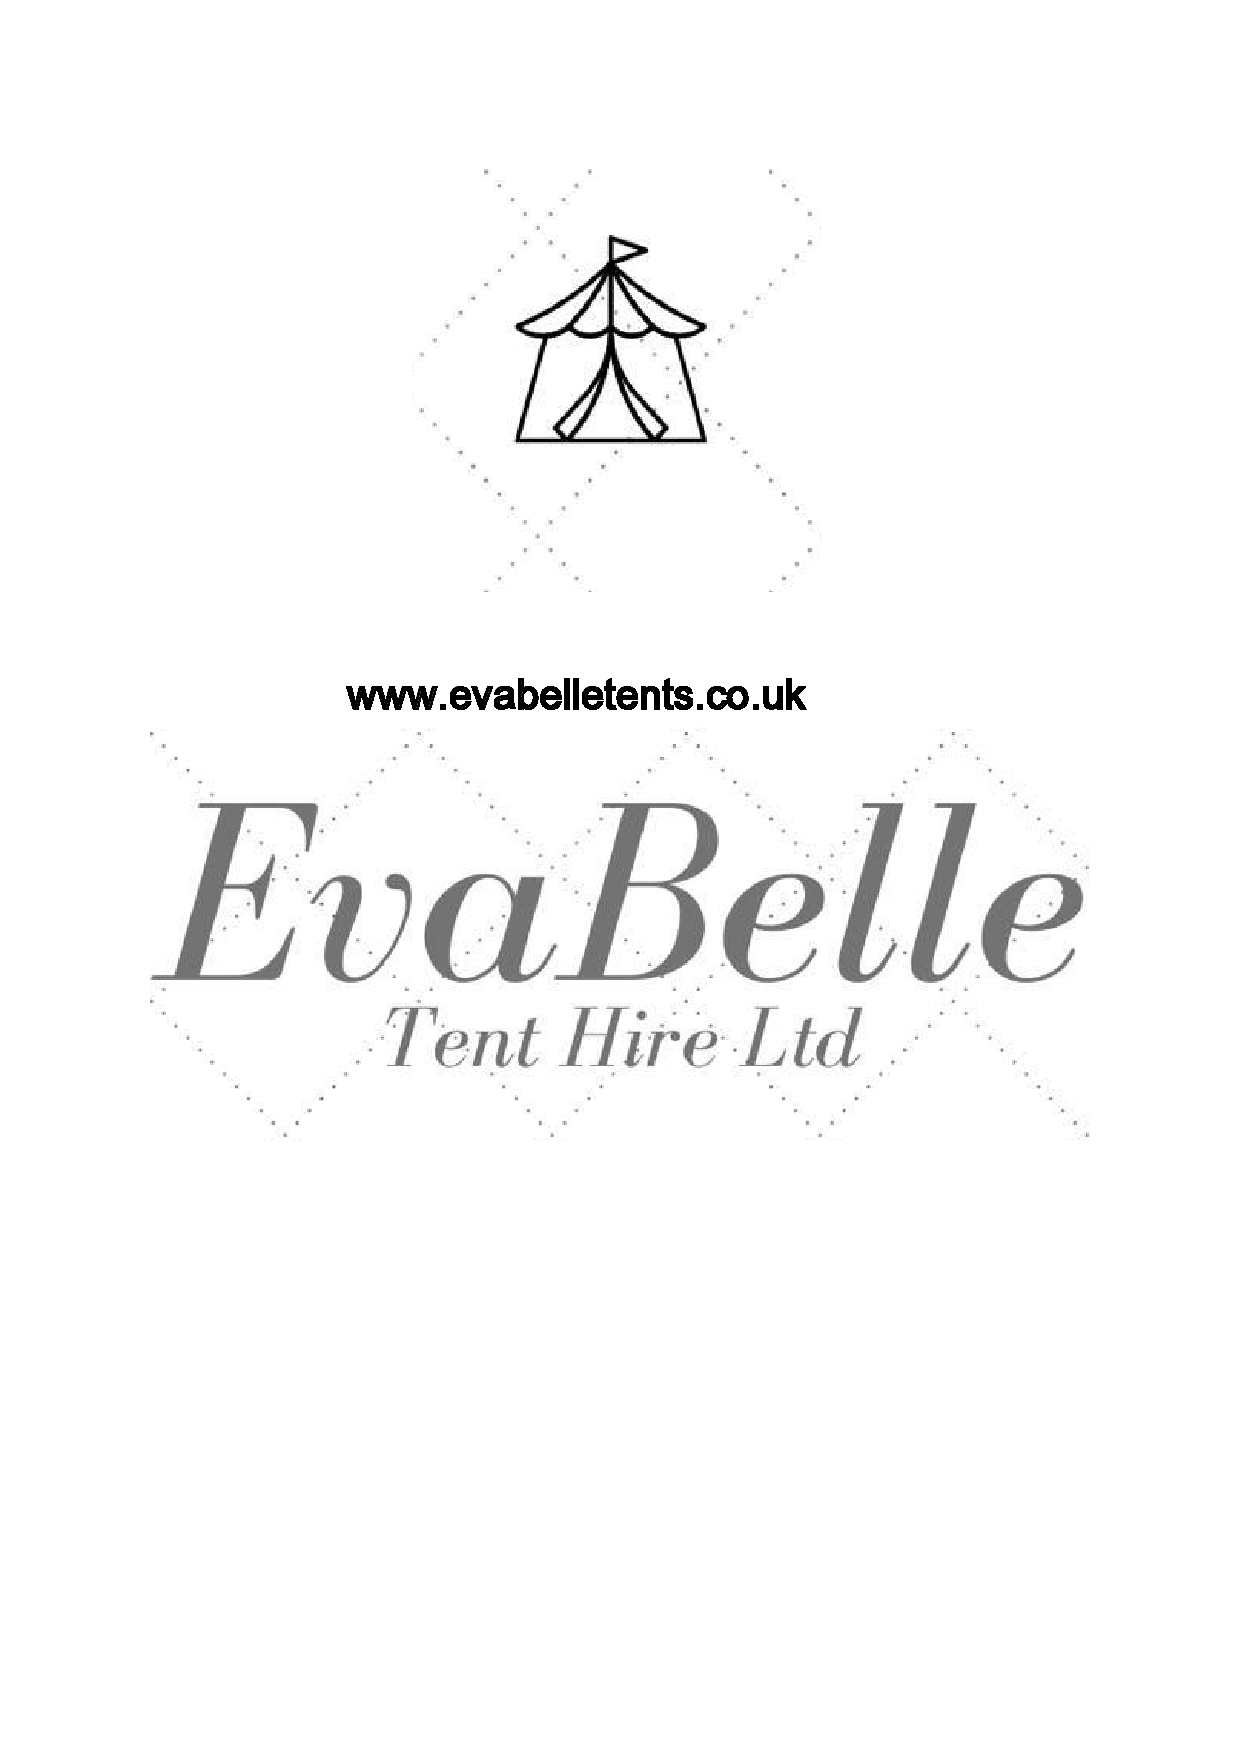 Evabelle Tent Hire 's logo